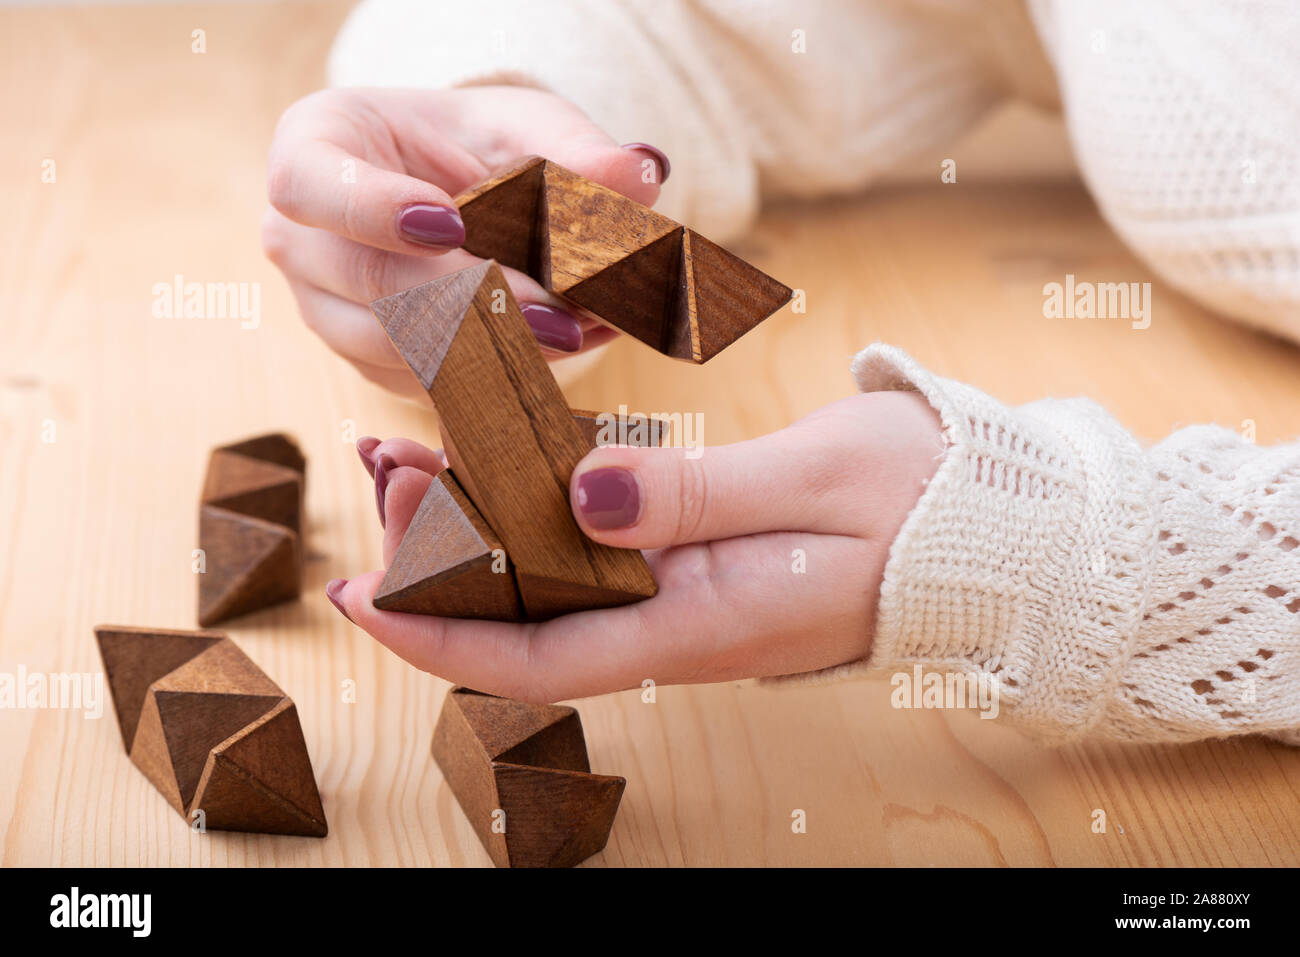 rompecabezas dodecaedro de forma de en las manos de una Doce caras pequeña estrella en forma dodecaedro sobre una mesa de madera. Concepto de puzzle Fotografía de stock -